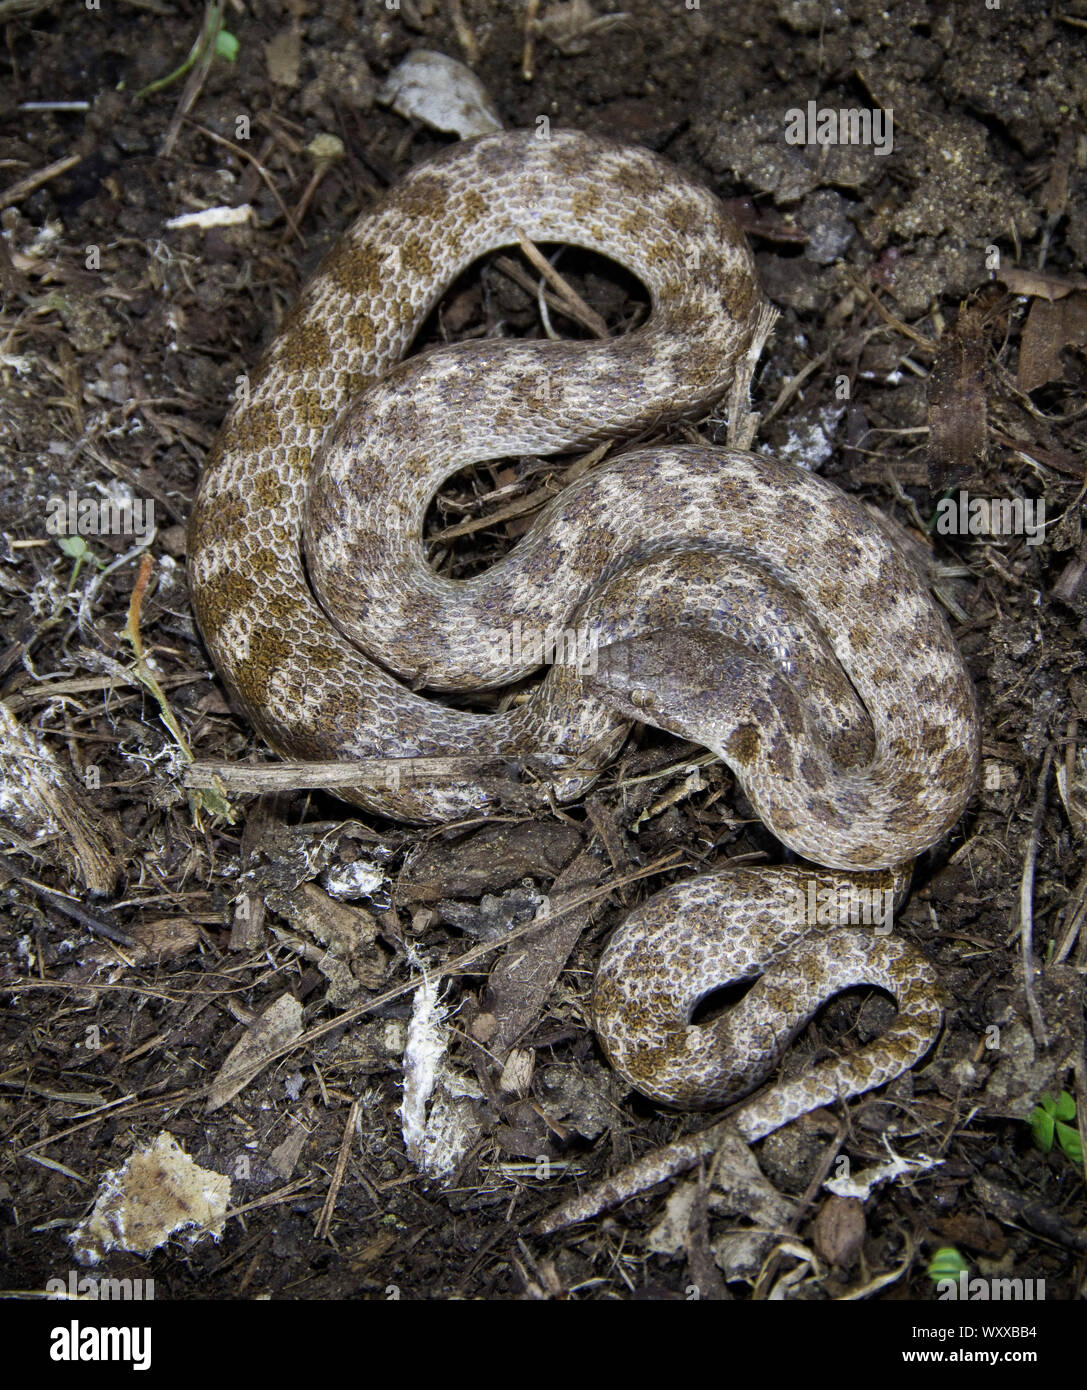 La noche la serpiente (Hypsiglena torquata) es una especie de serpientes colubrid fanged trasero. Varía a lo largo del suroeste y oeste de los Estados Unidos, como nosotros Foto de stock